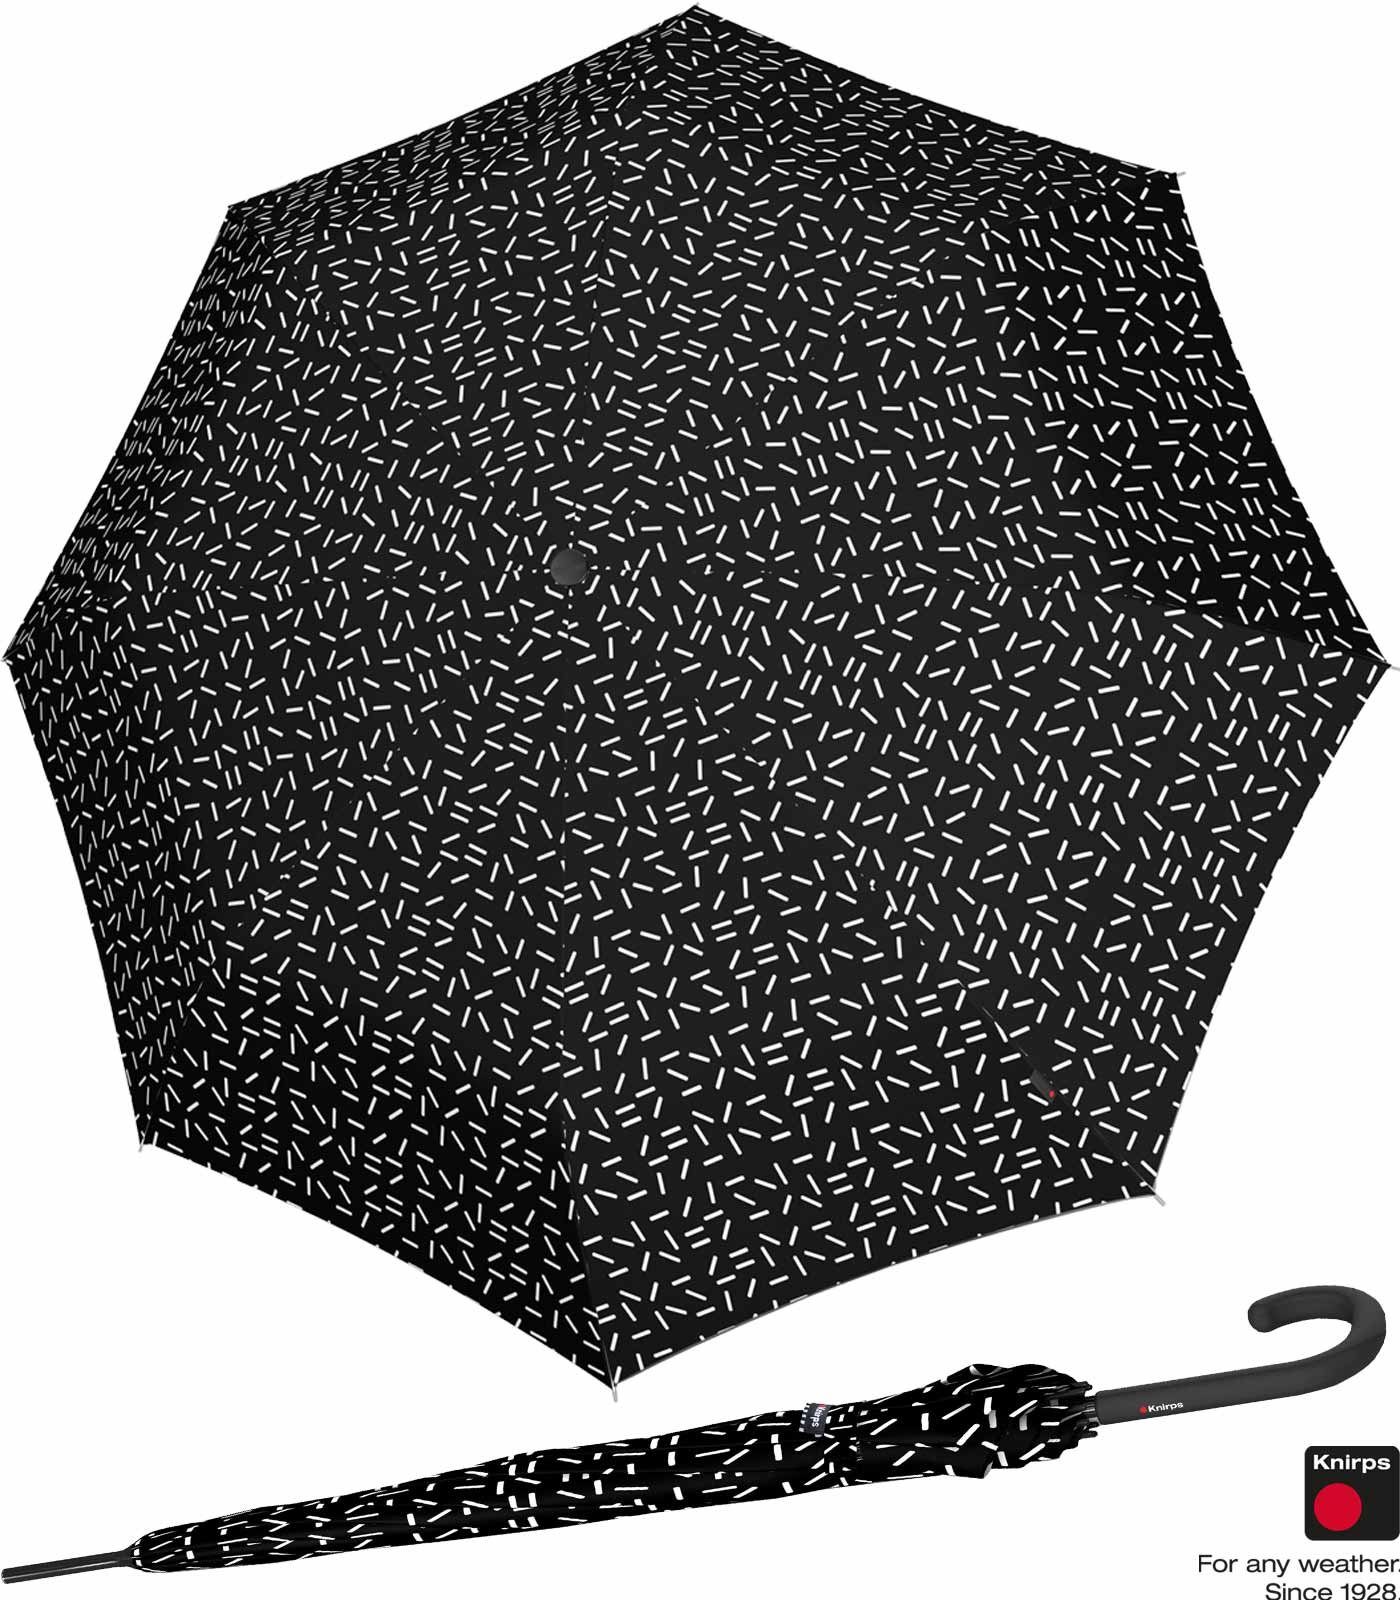 Knirps® Langregenschirm groß stabil A.760 Auf-Automatik Damen und schwarz - 2Dance